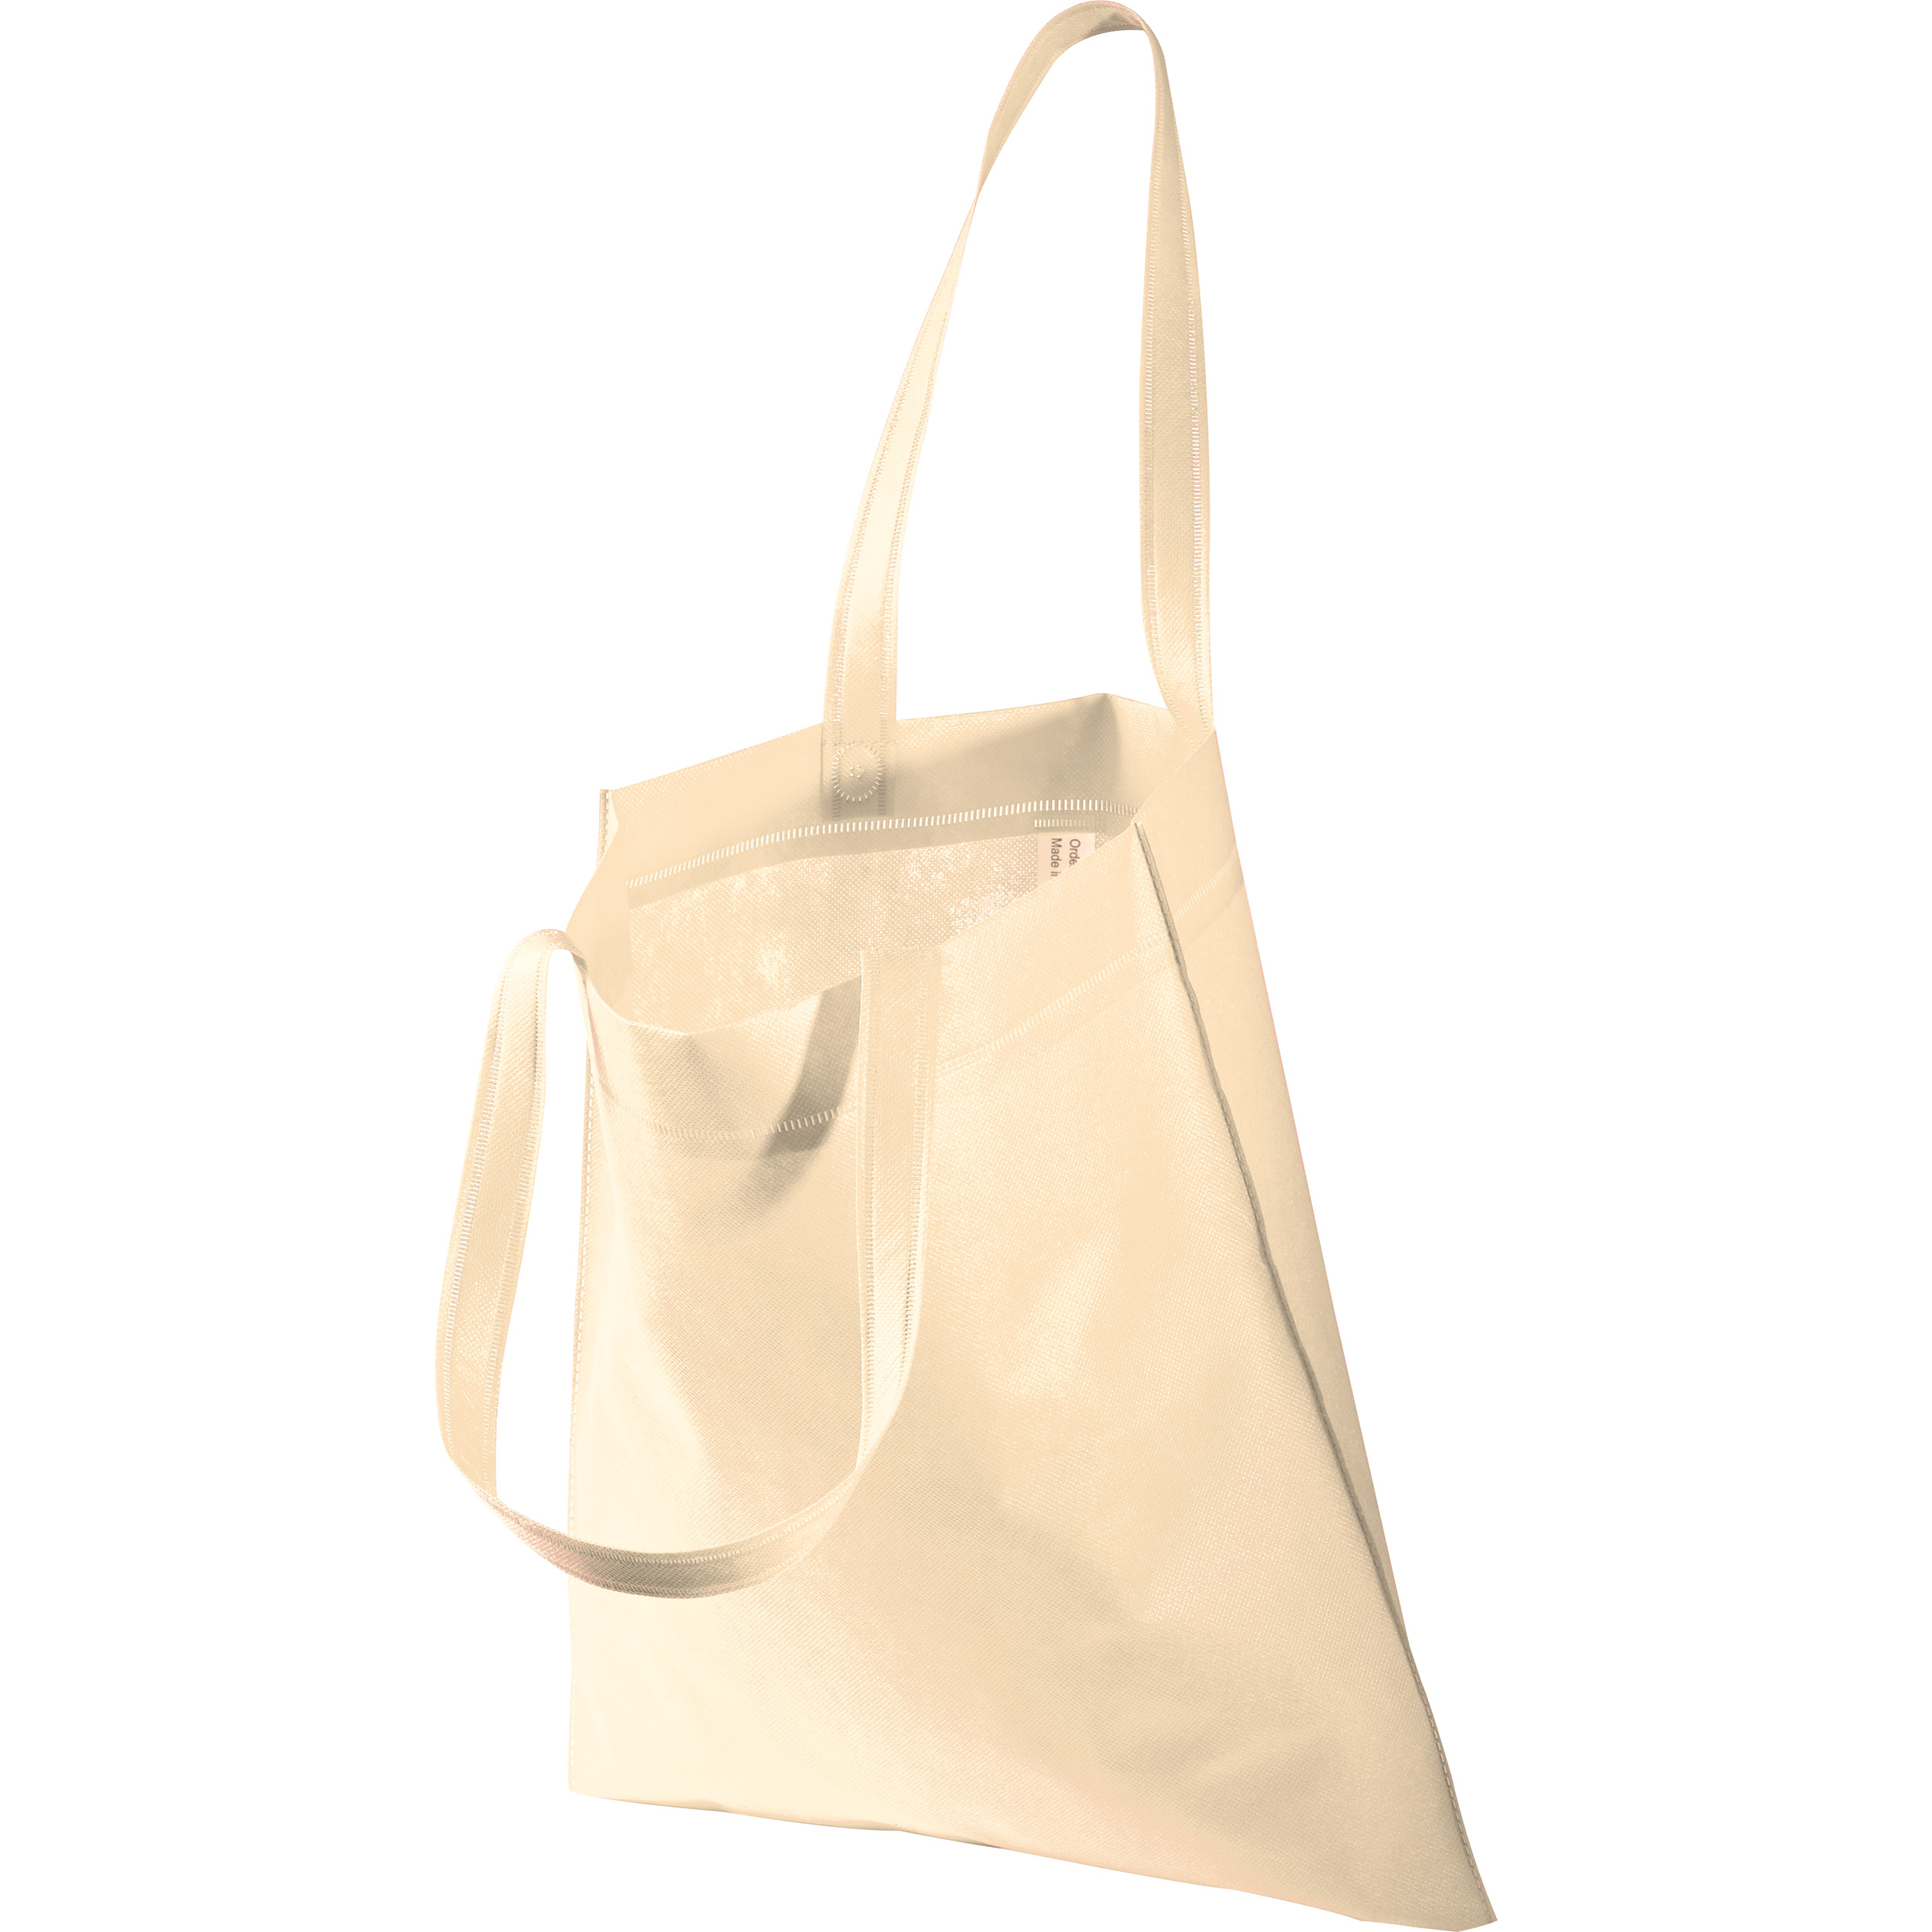 Non-woven bag with long handles